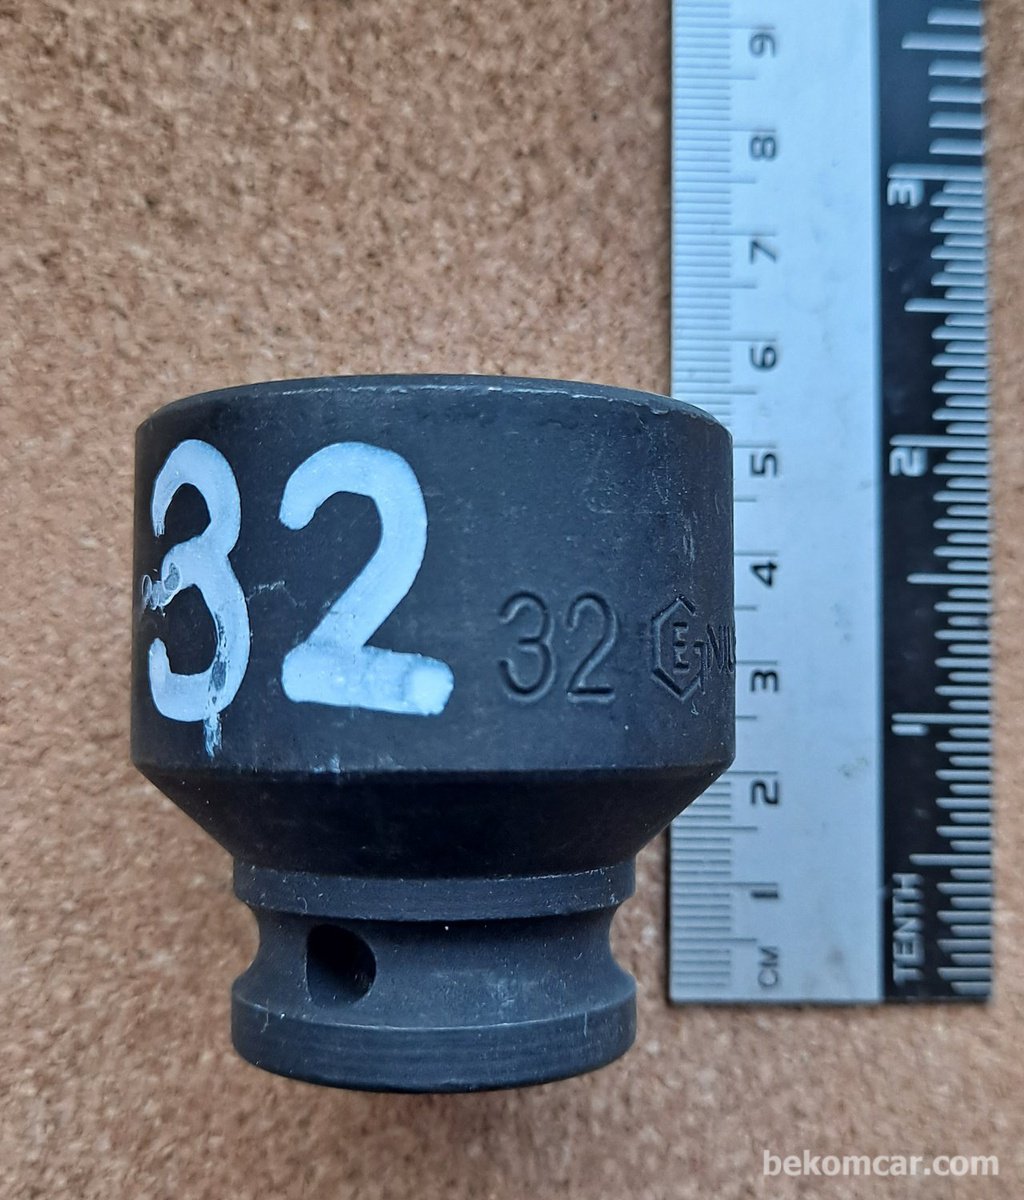 6각 32mm 임팩트용 1/2" 소켓|bekomcar.com